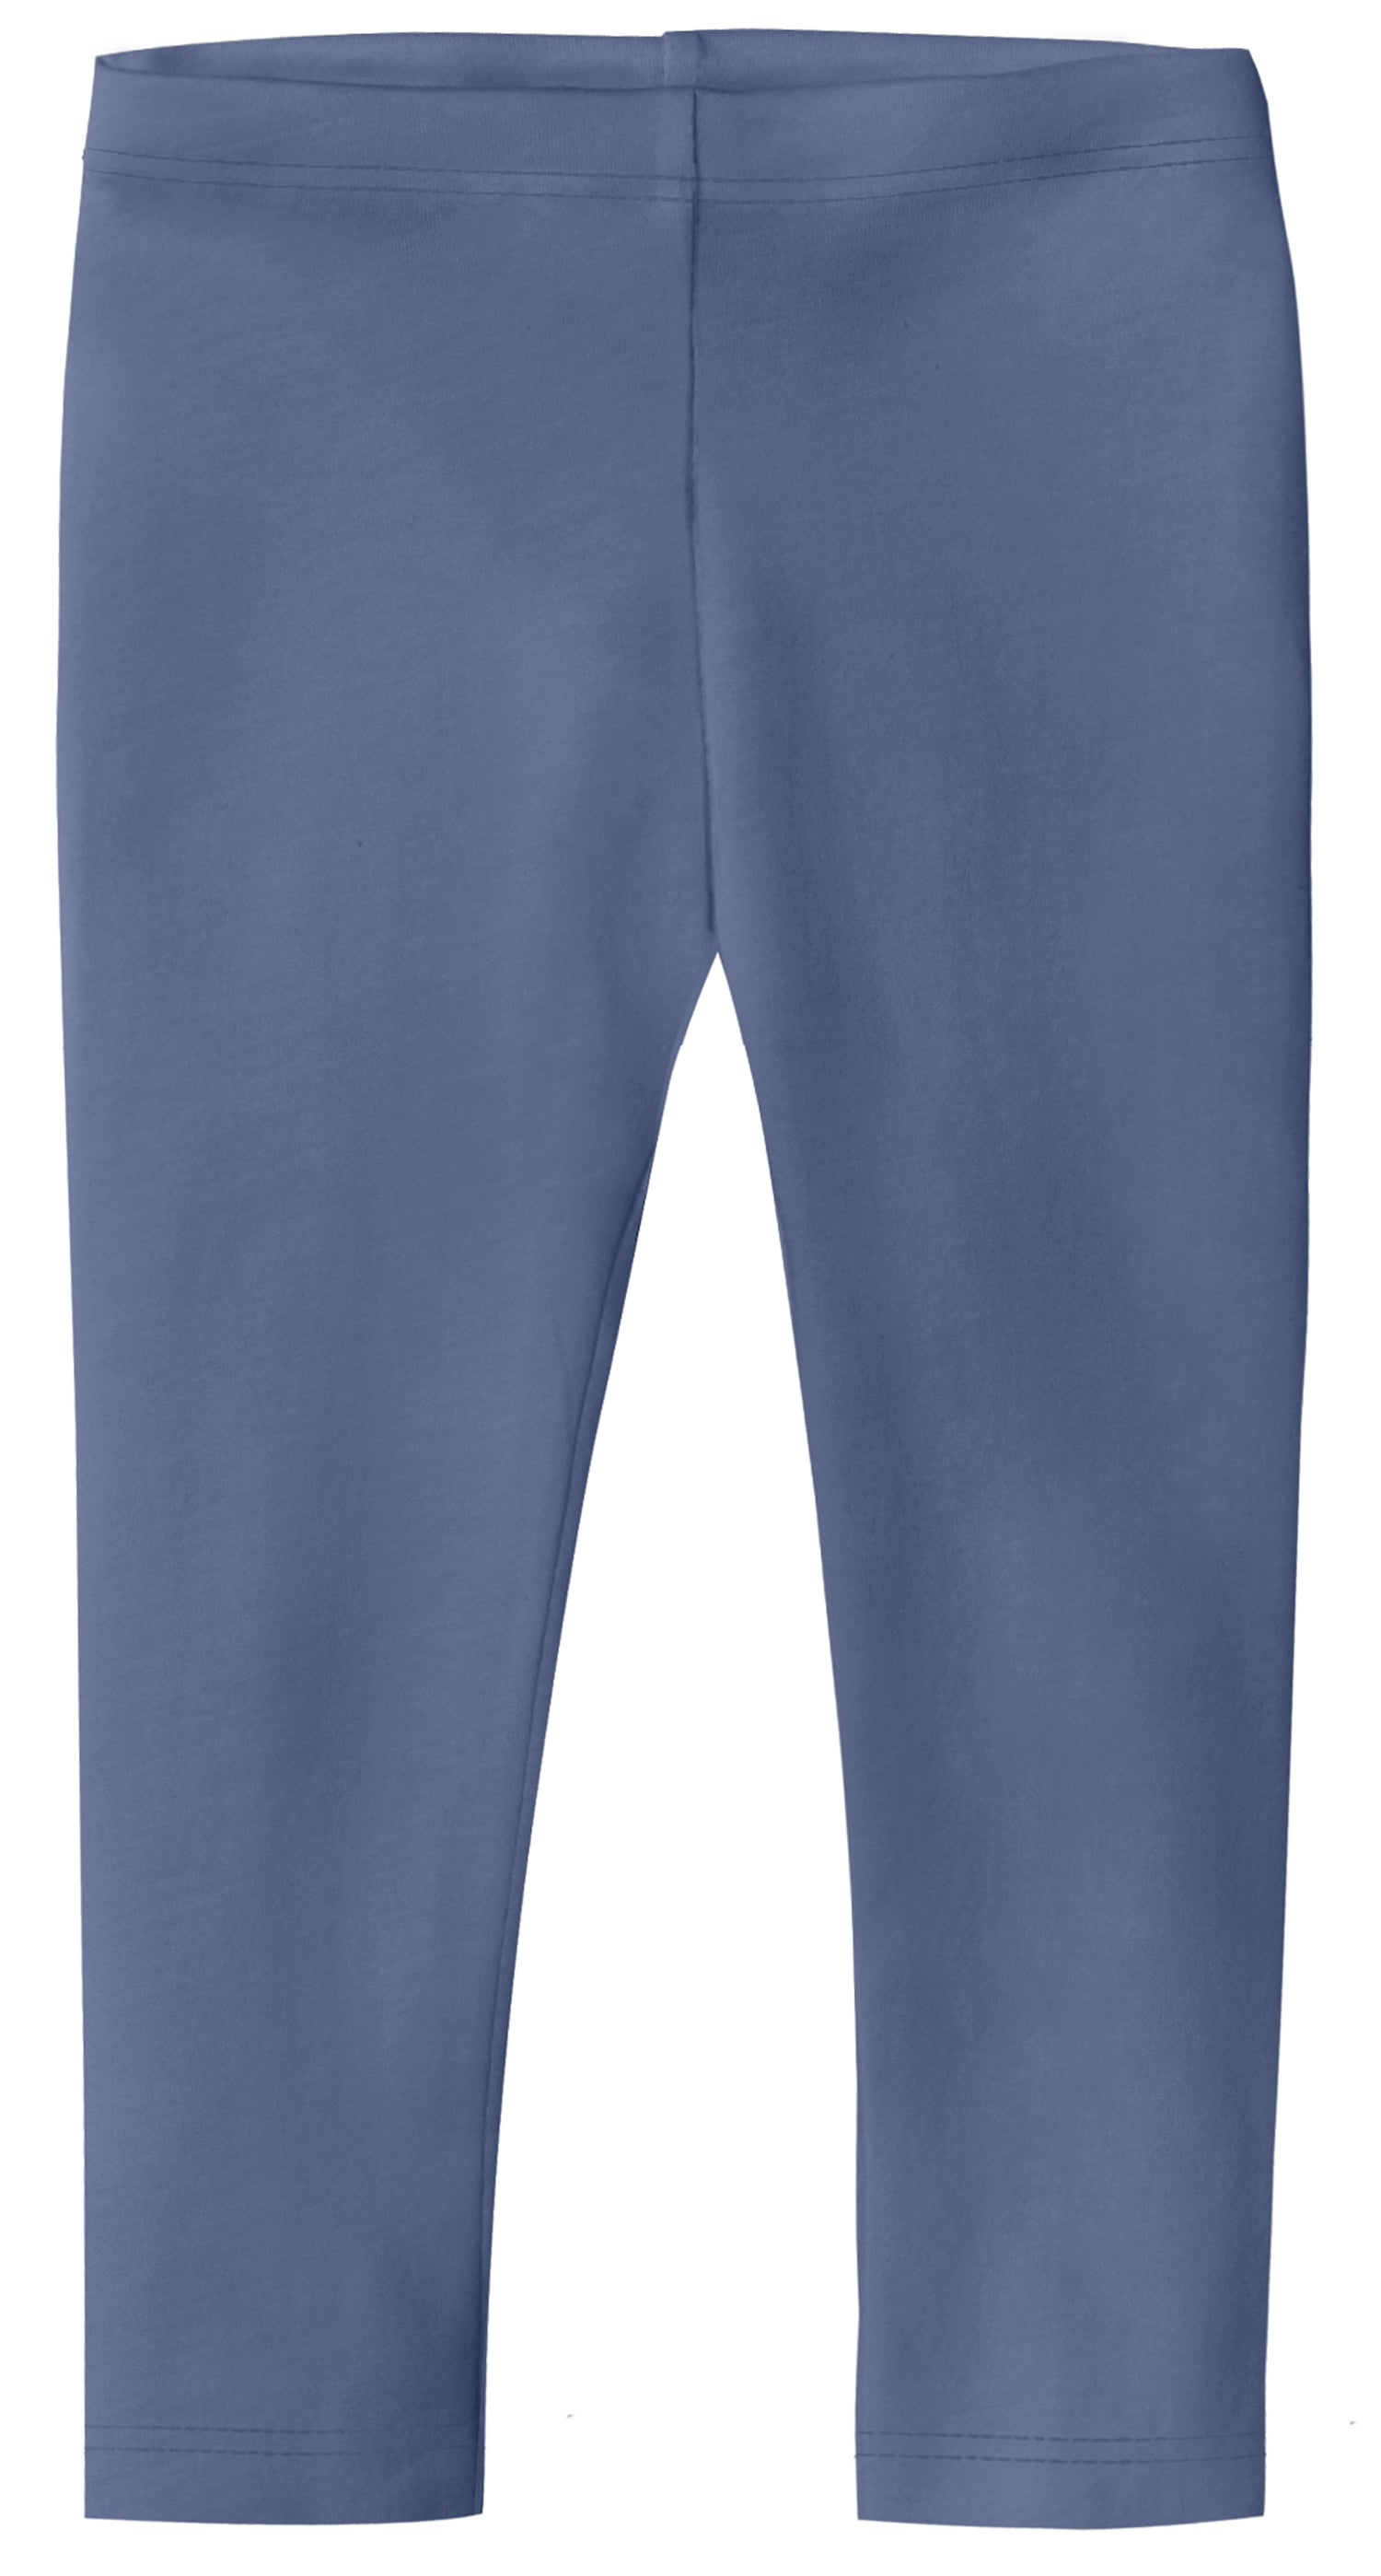 Girls Soft 100% Cotton Capri Leggings | Bright Light Blue